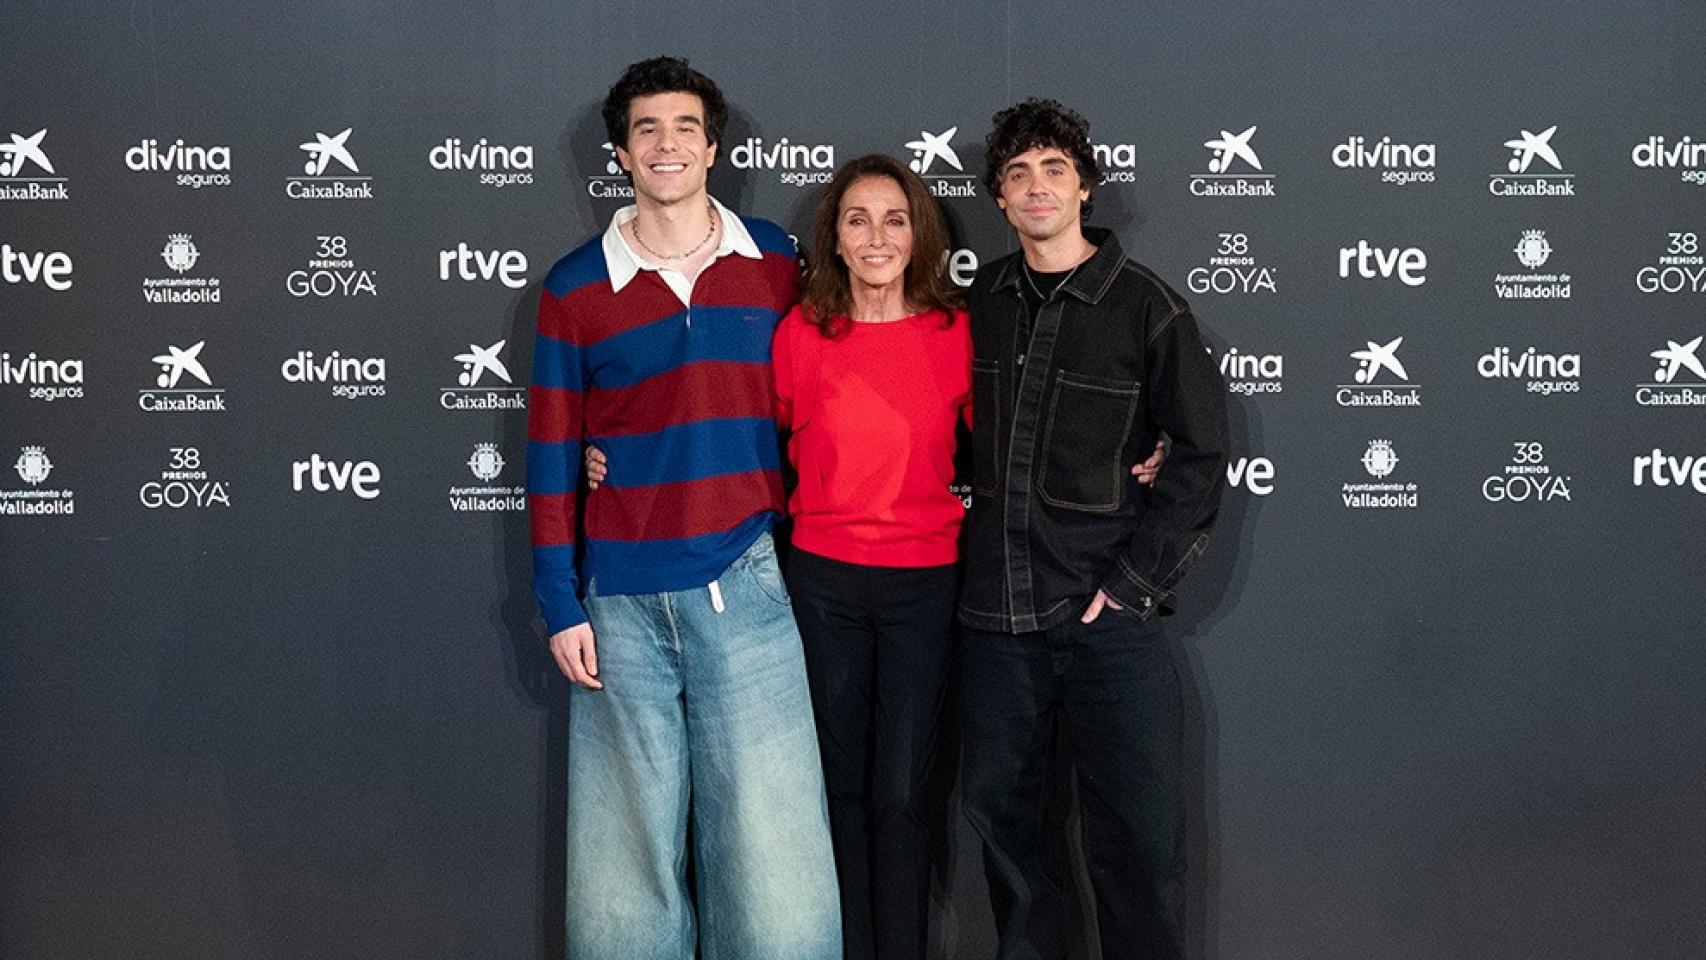 De izquierda a derecha: Javier Calvo, Ana Belén y Javier Ambrossi, los tres presentadores.